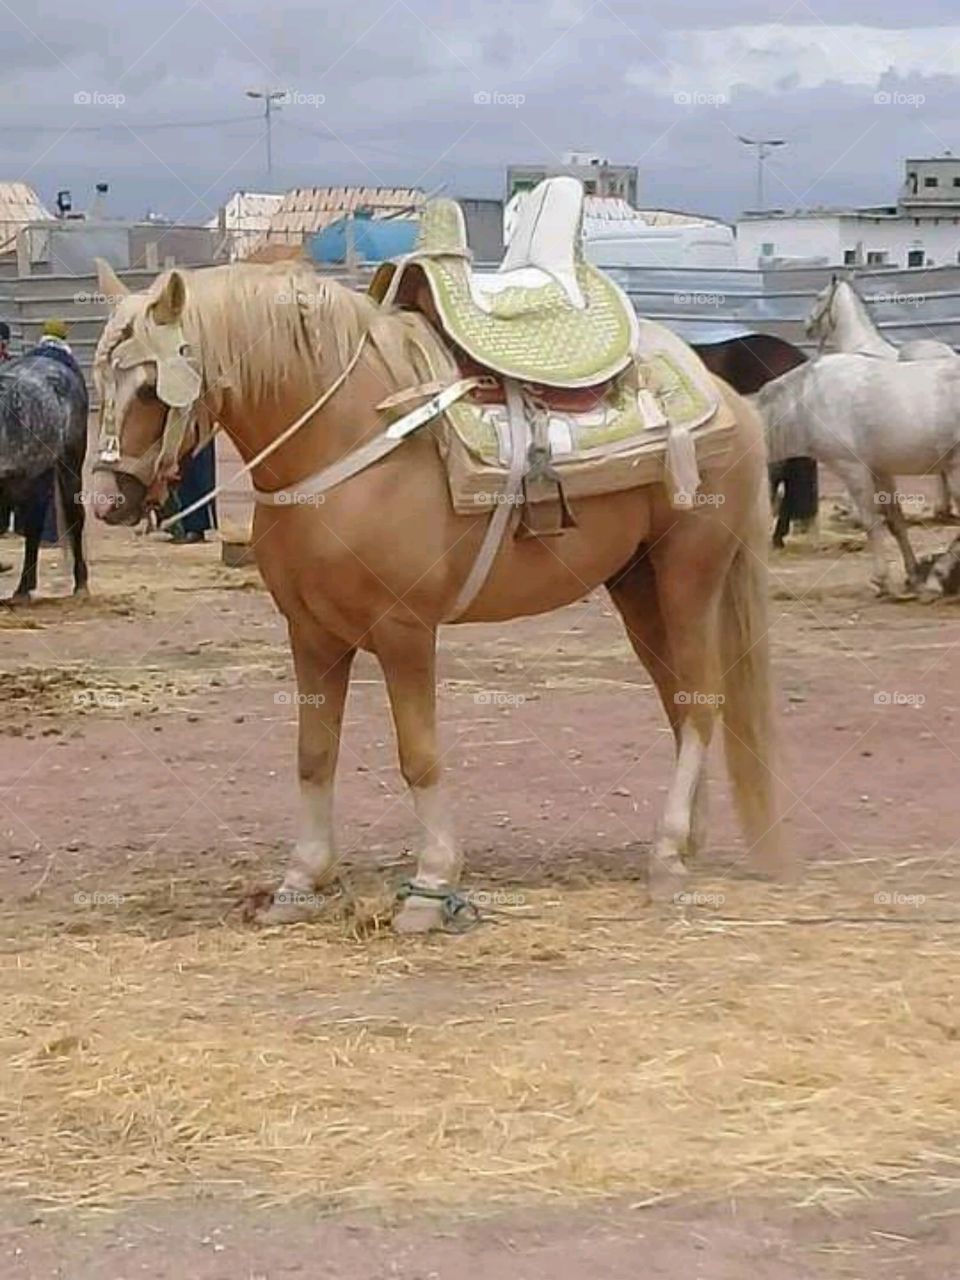 Moroccan horses - Tbourida festival in Morocco